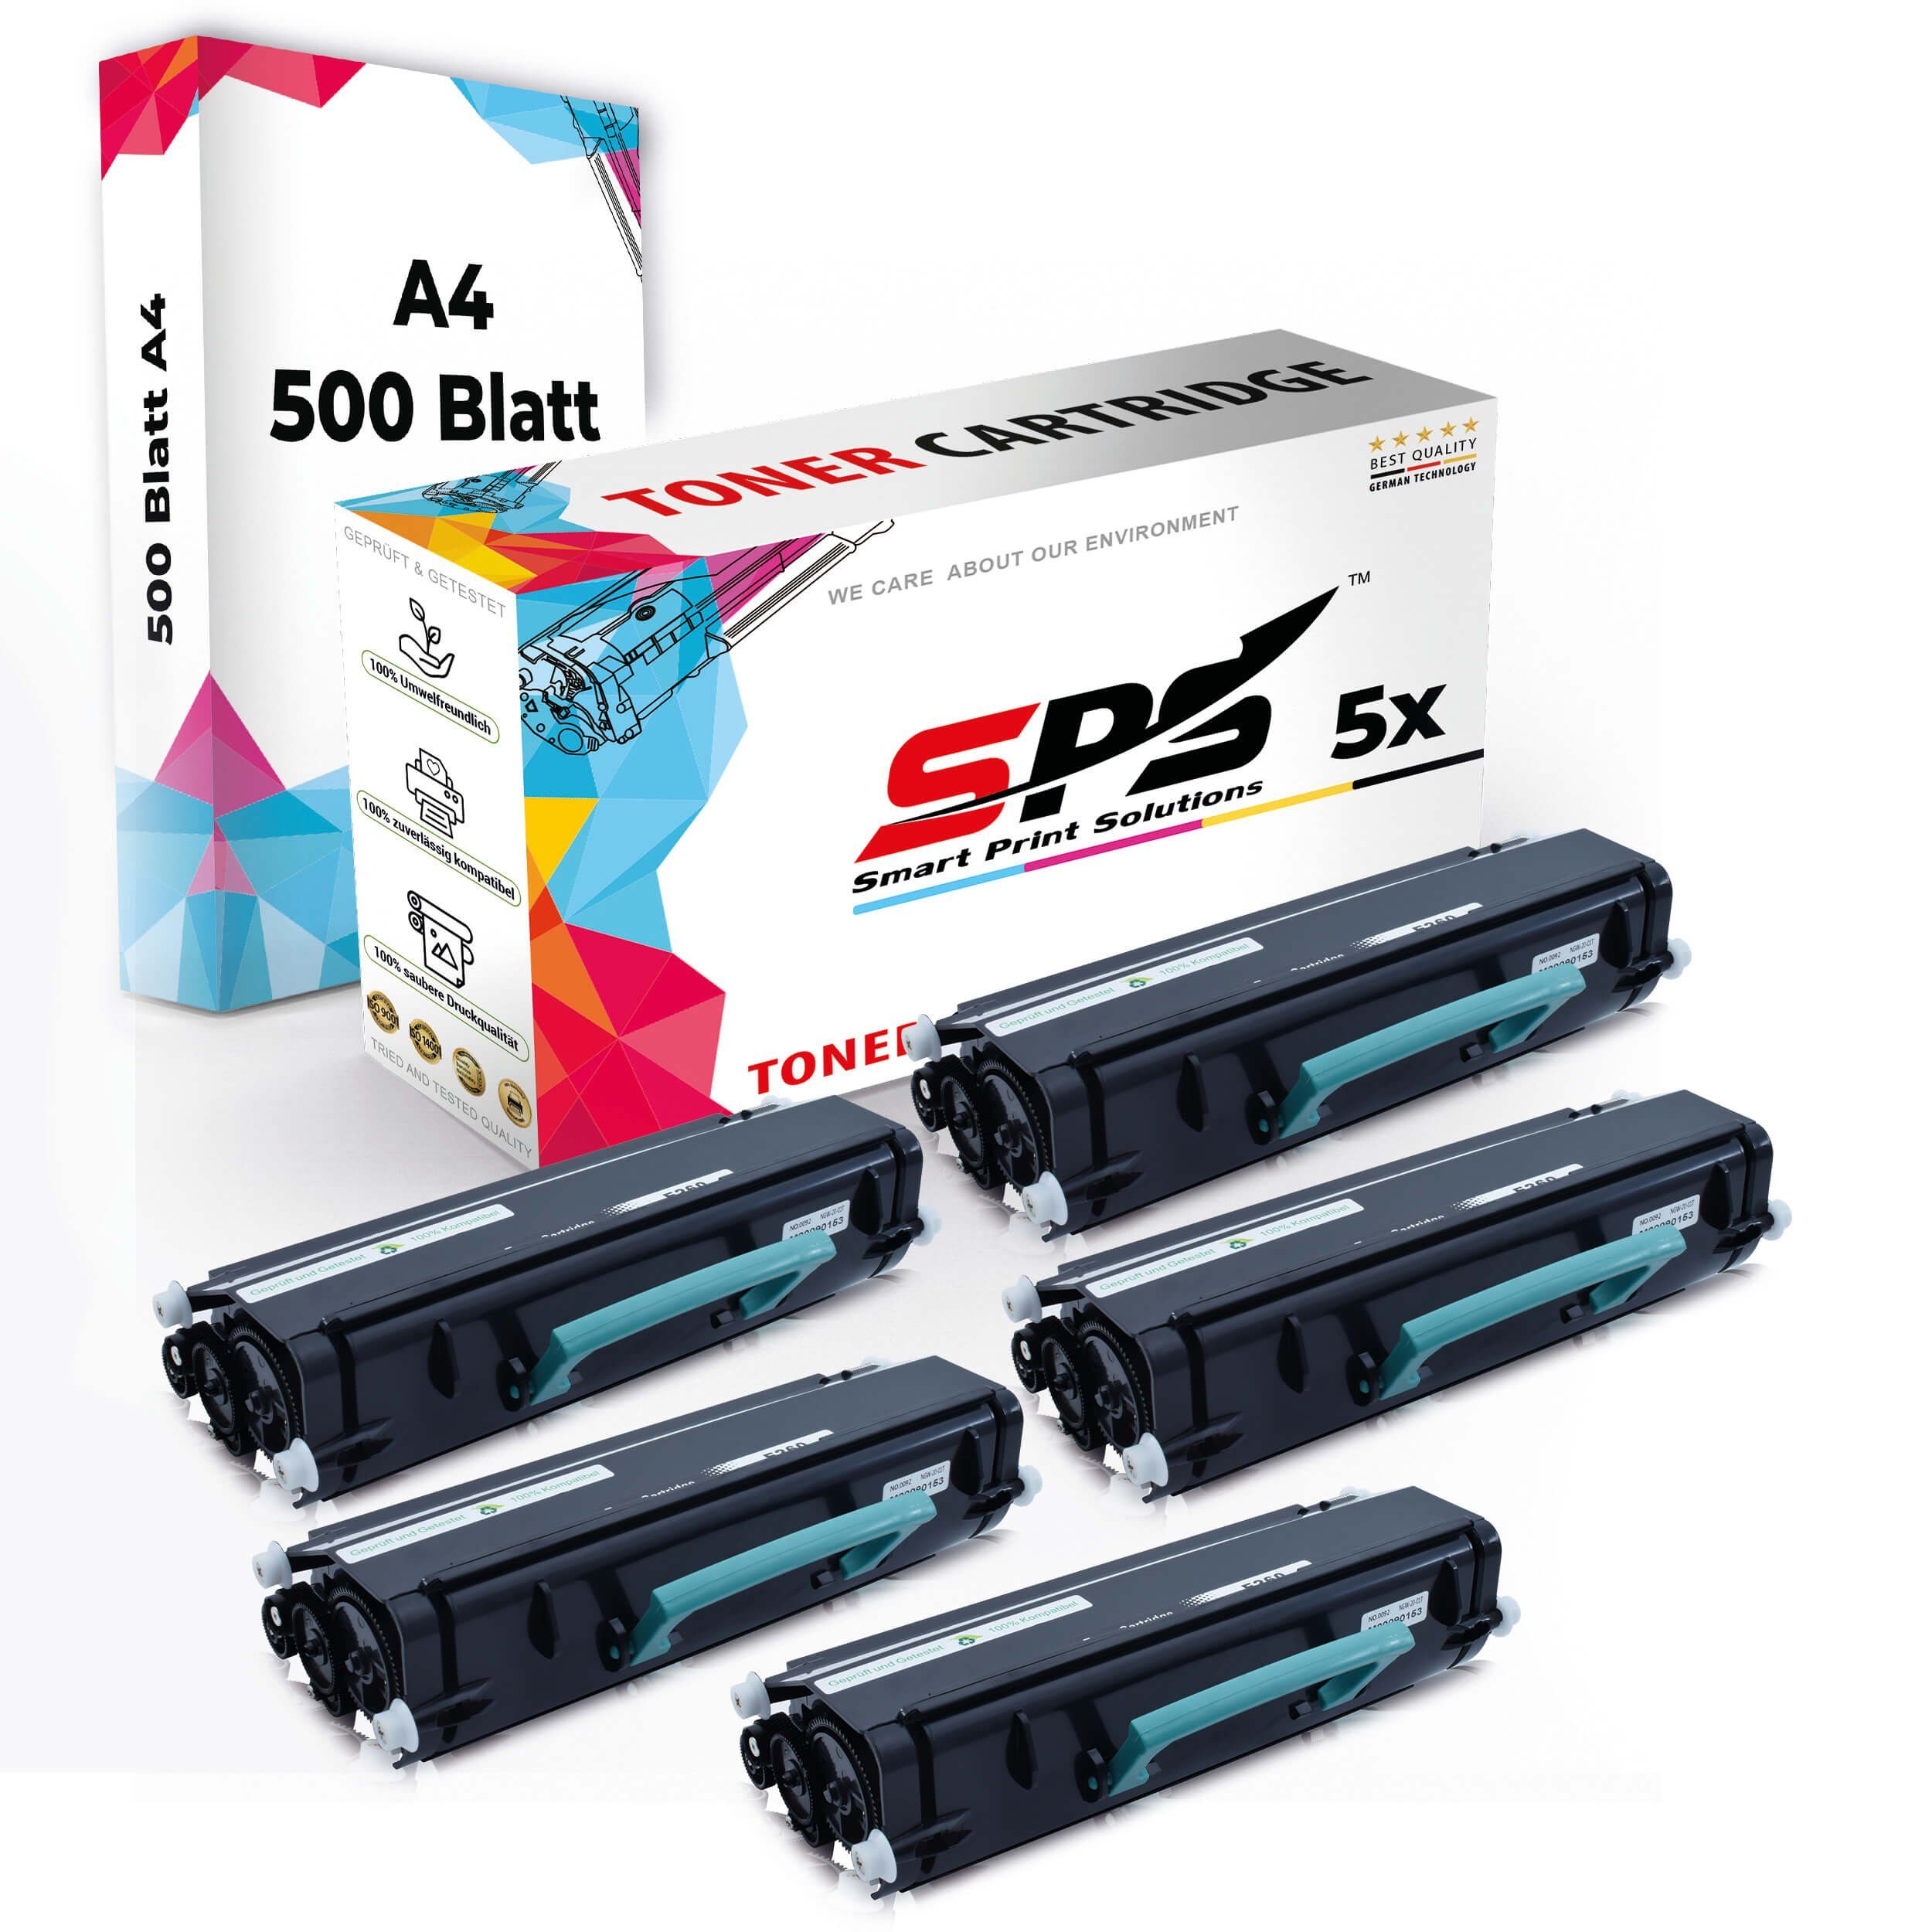 5x 5x Druckerpapier Tonerkartusche + A4 Druckerpapier) Kompatibel, Multipack SPS Set Toner,1x (5er Pack, A4